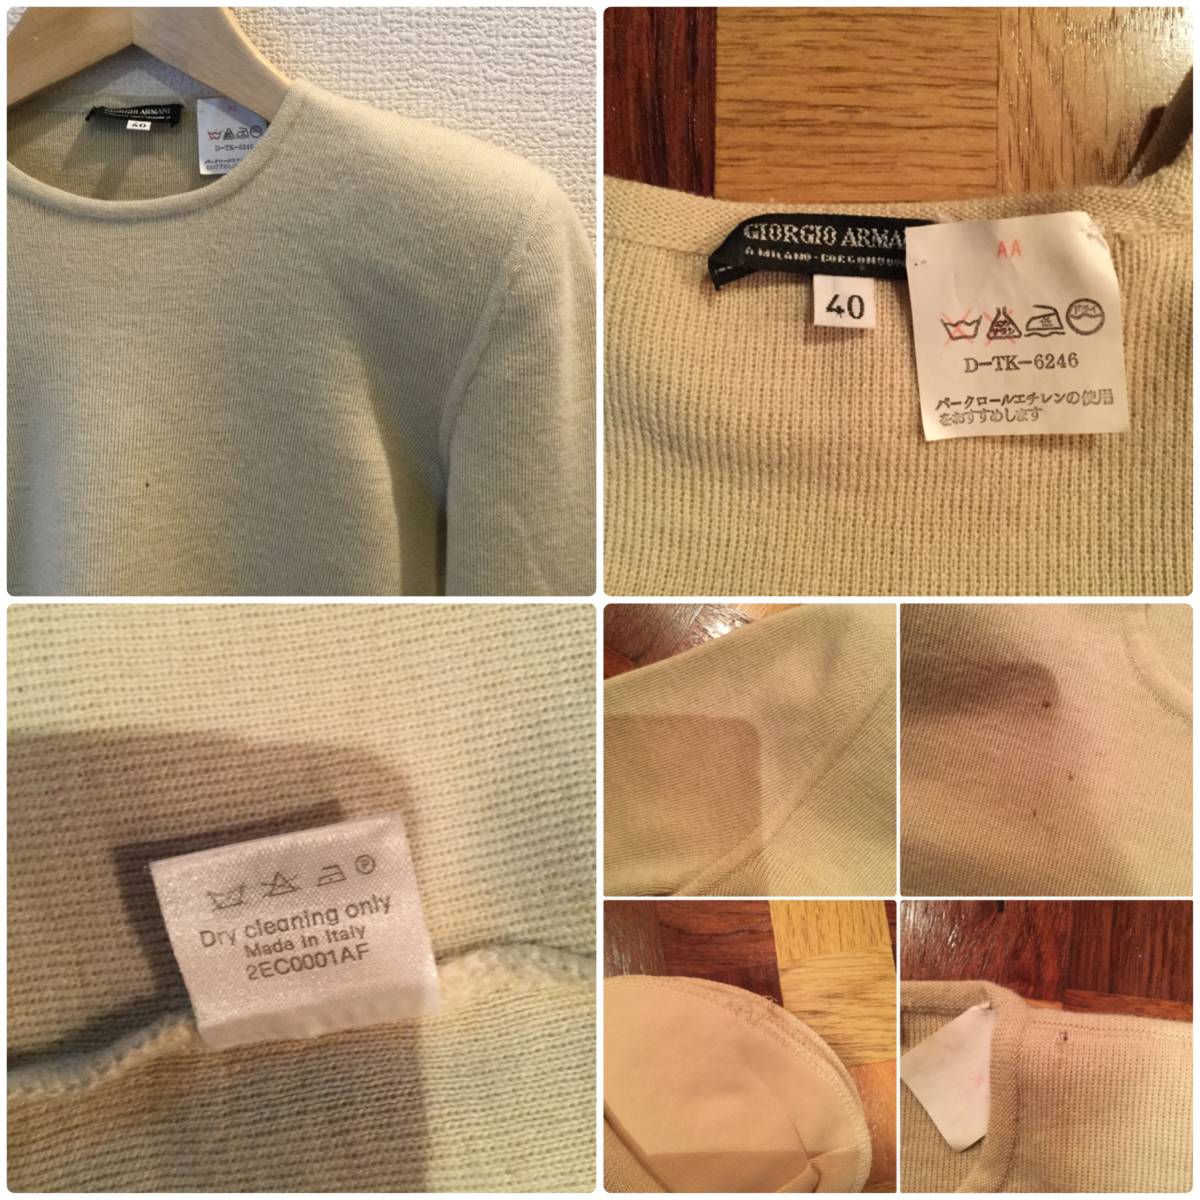 joru geo Armani чёрный бирка дизайн вязаный 40/ свитер 